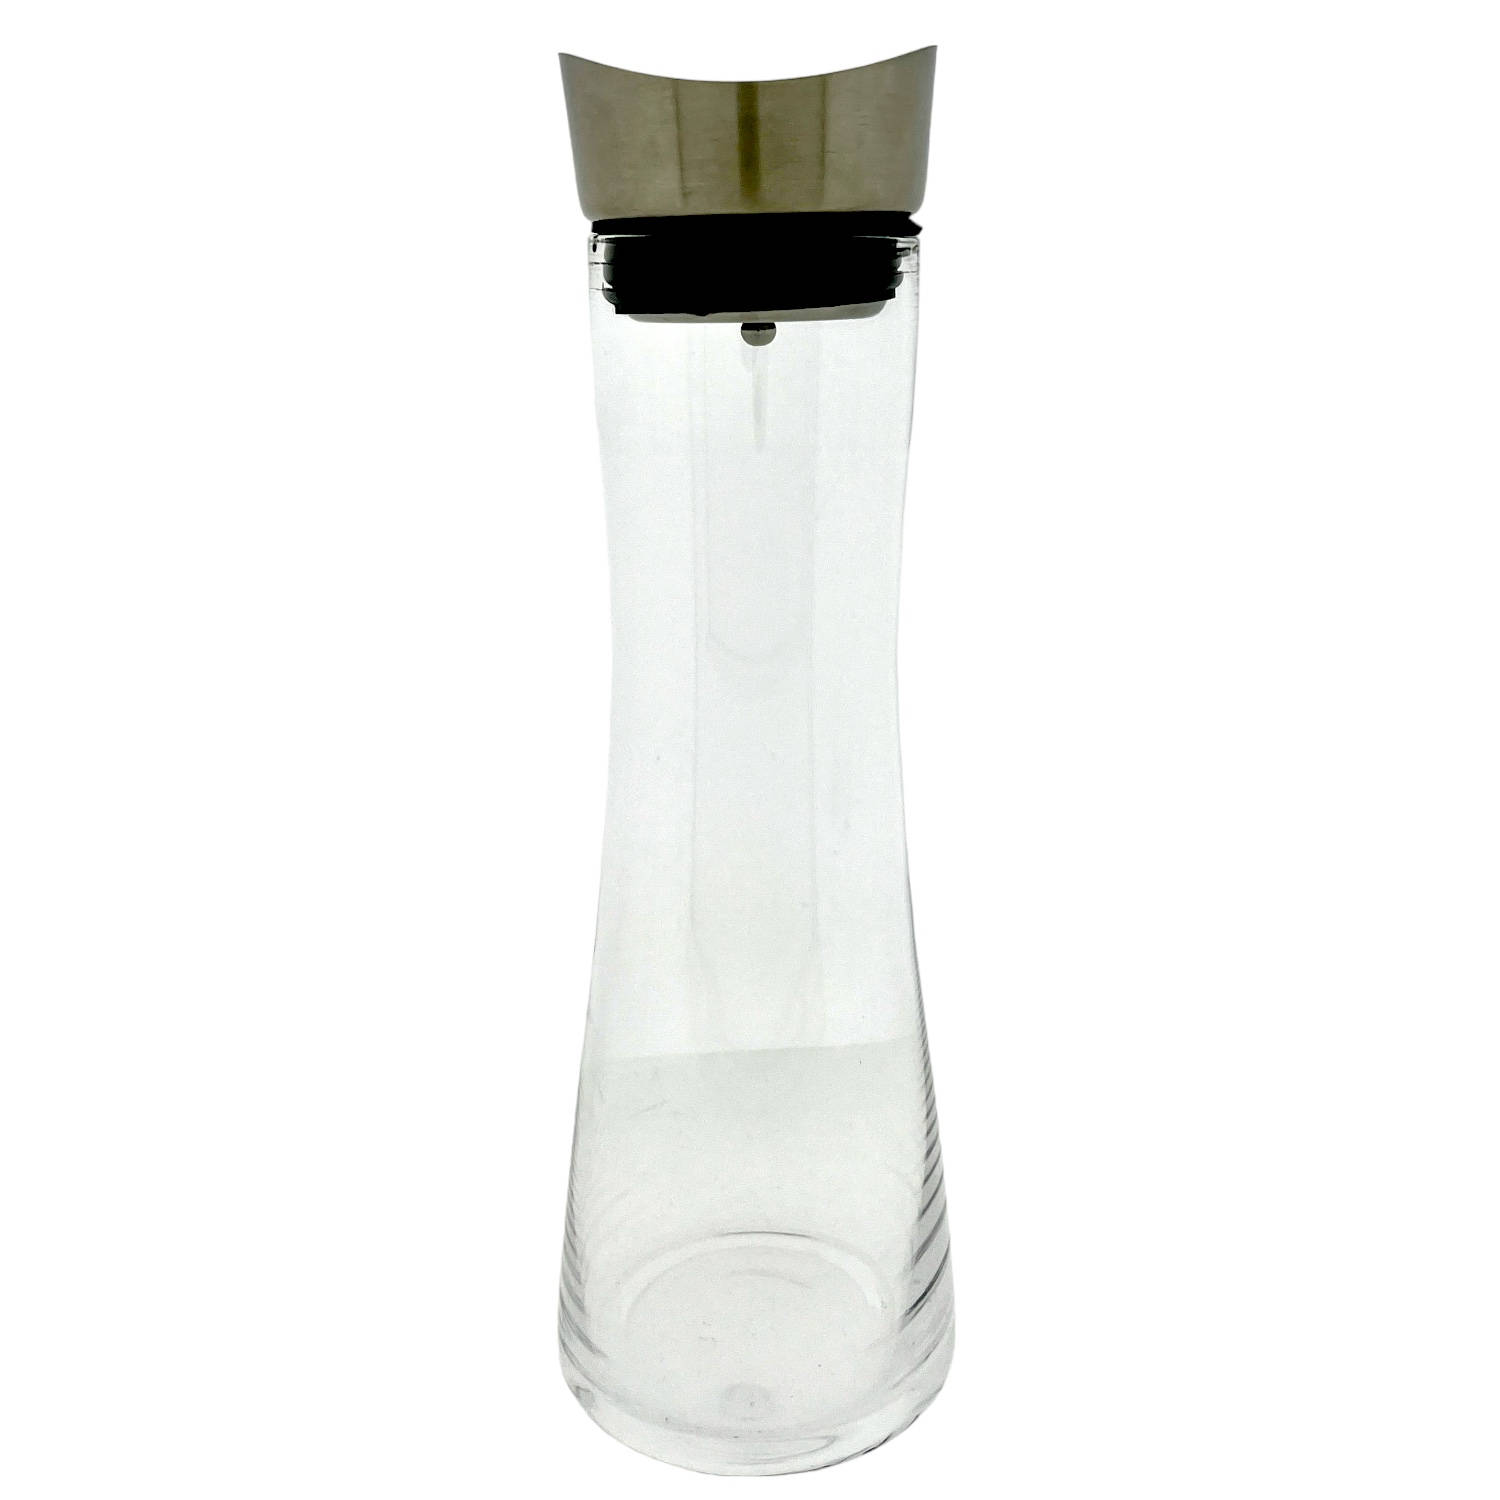 Glazen Karaf met roestvrijstalen Schenktuit en zeef glazen kan Ø 10 x 34 cm 1 liter glazen